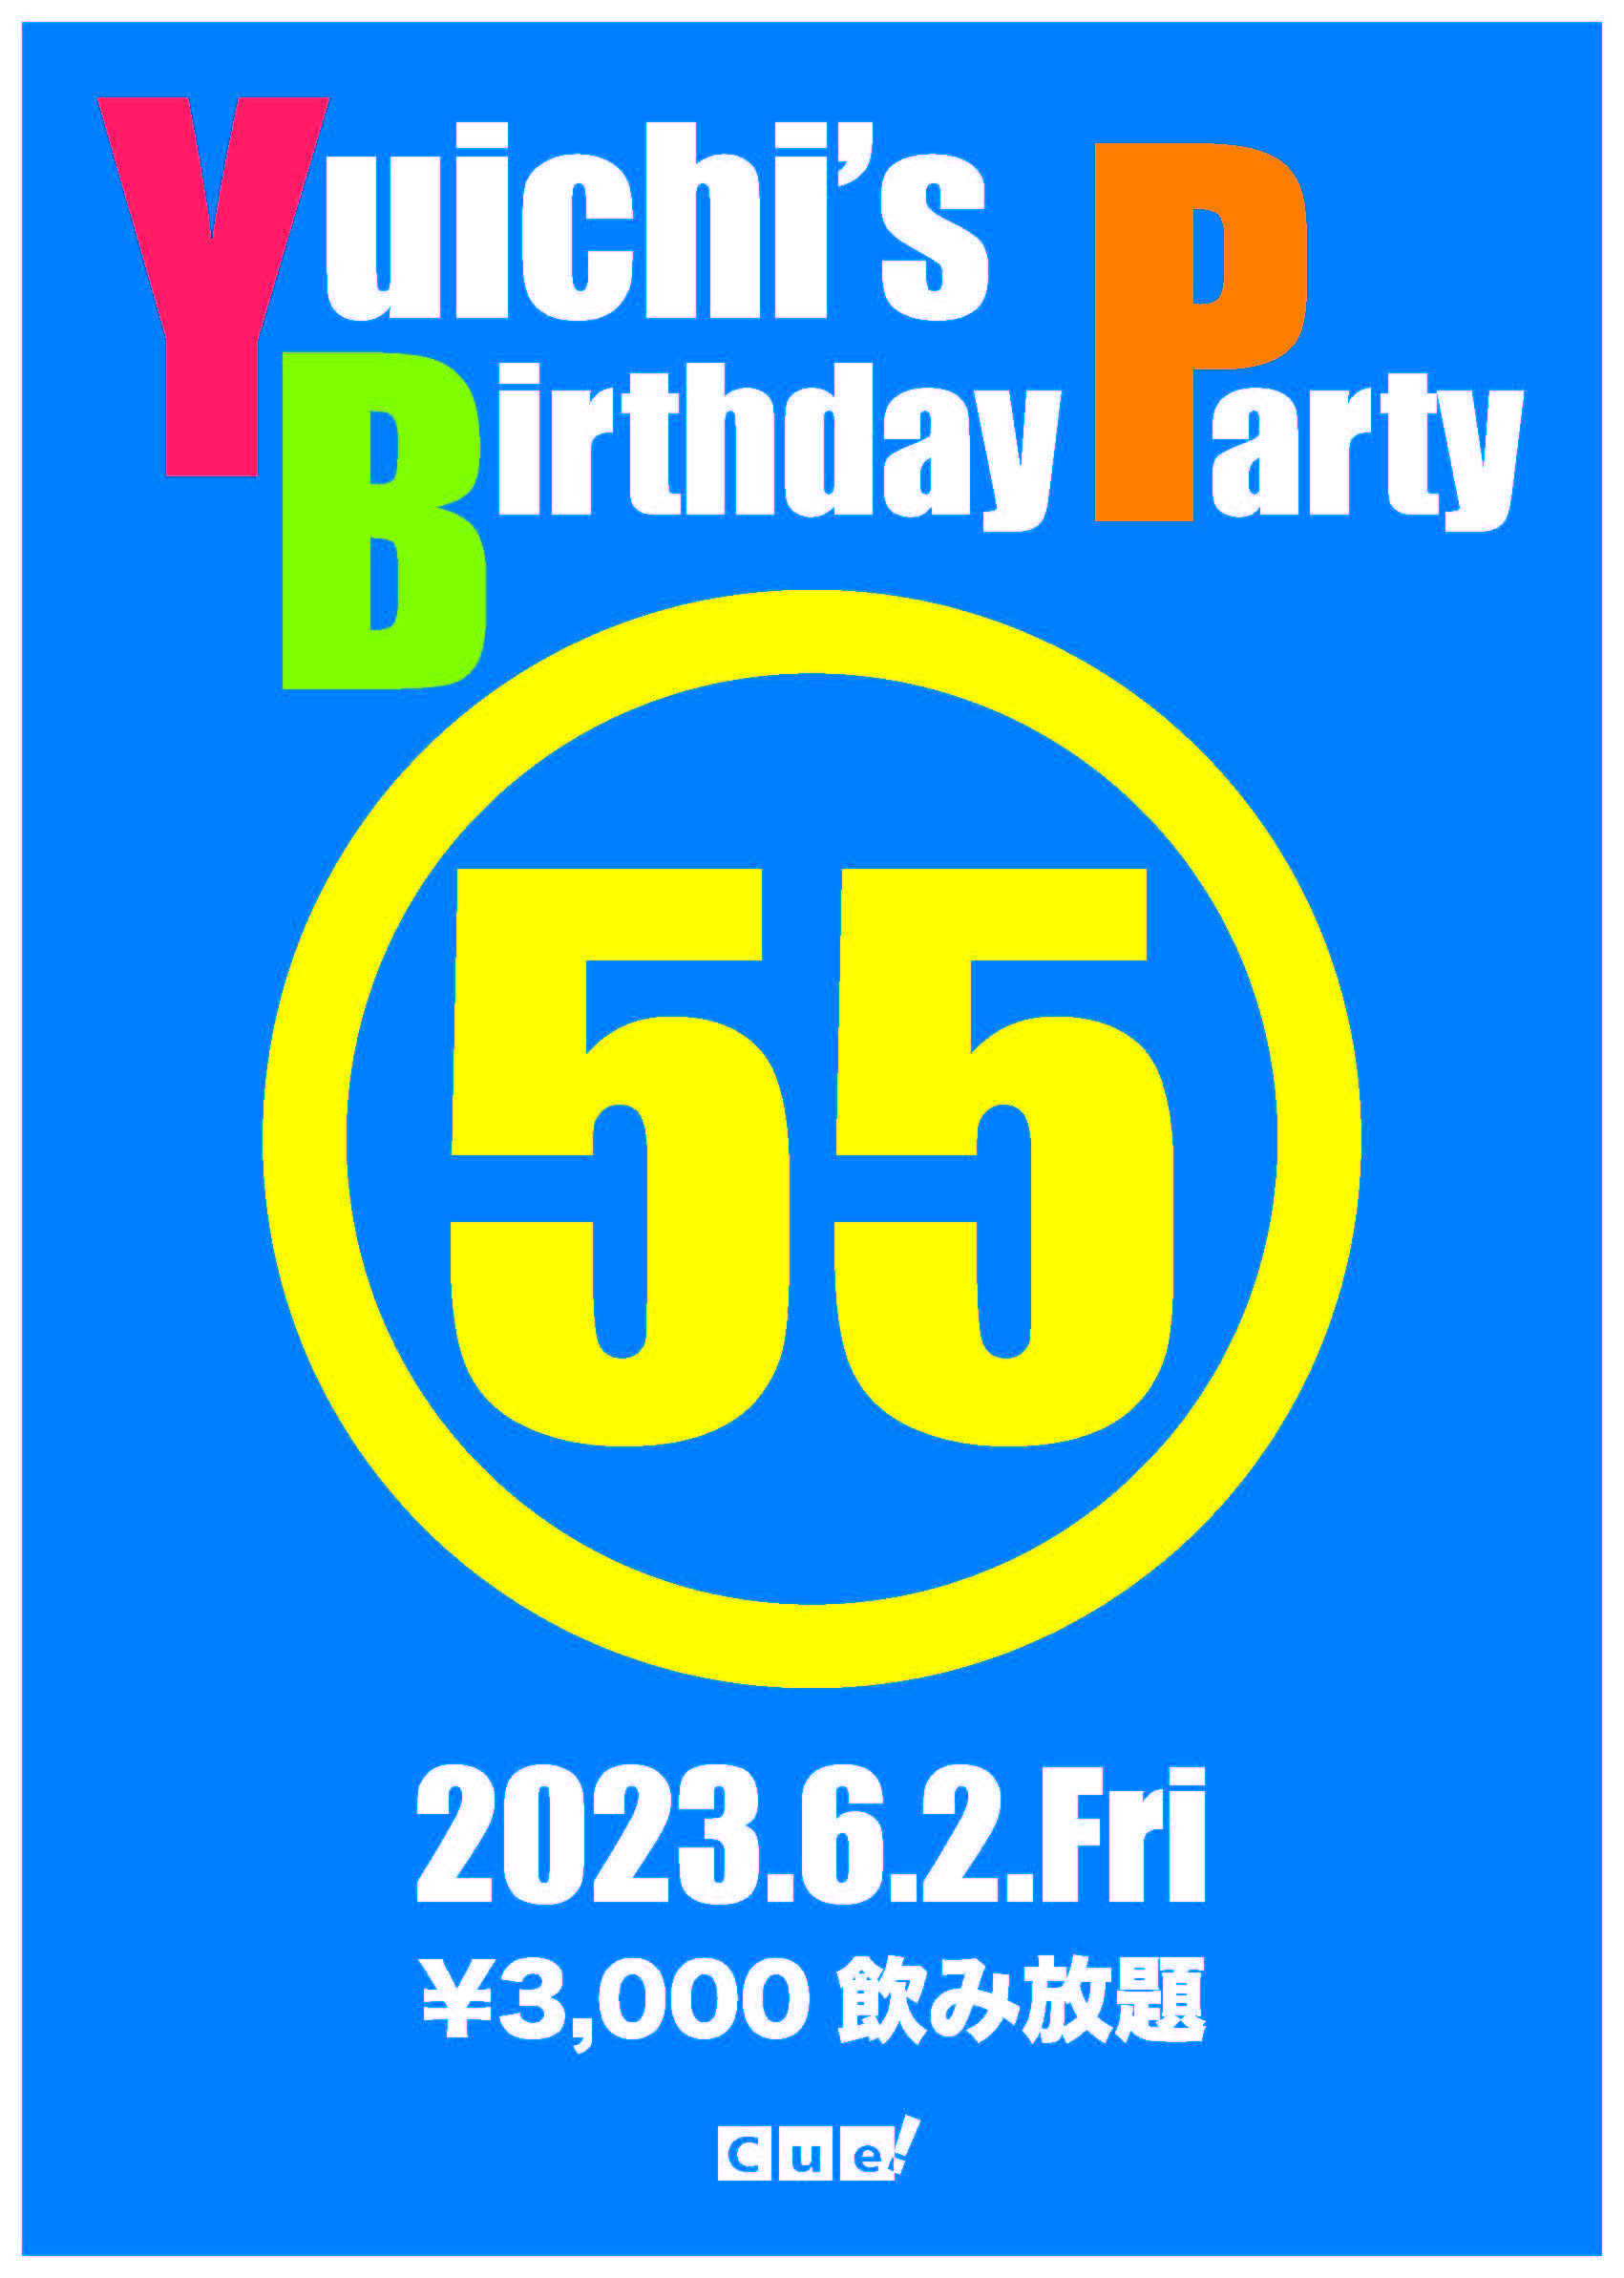 Yuichi's Birthday Party